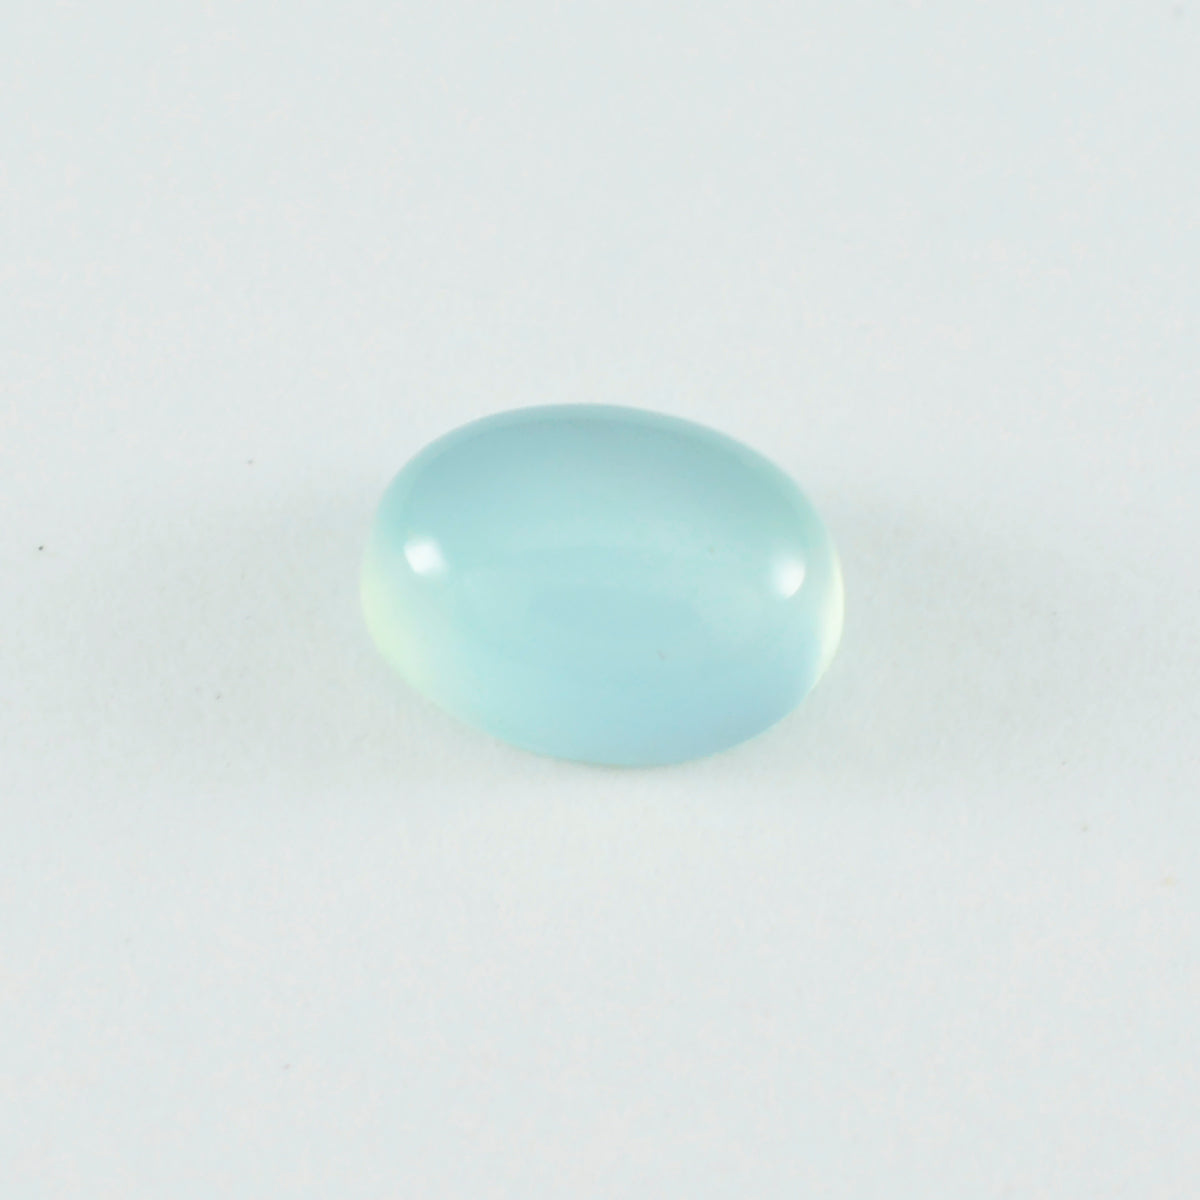 Riyogems 1 pieza cabujón de calcedonia aguamarina 6x8 mm forma ovalada gemas de calidad atractivas